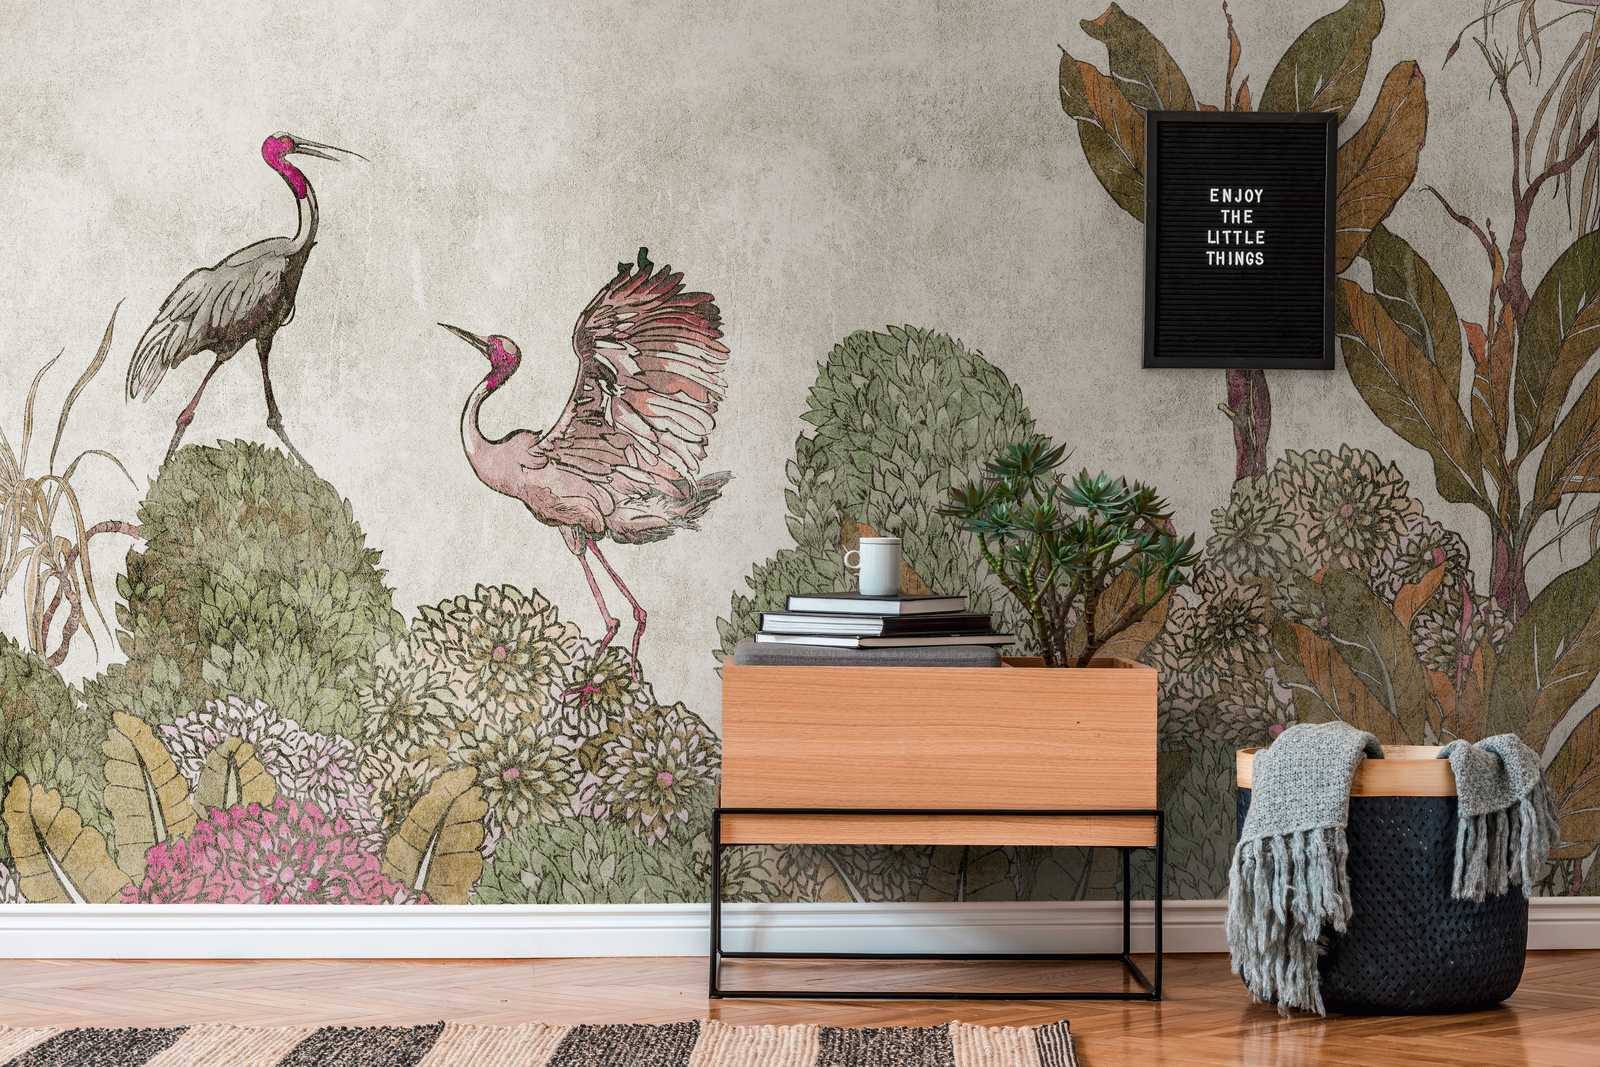             behang nieuwigheid | motief behang tropische planten & kraanvogels in used look
        